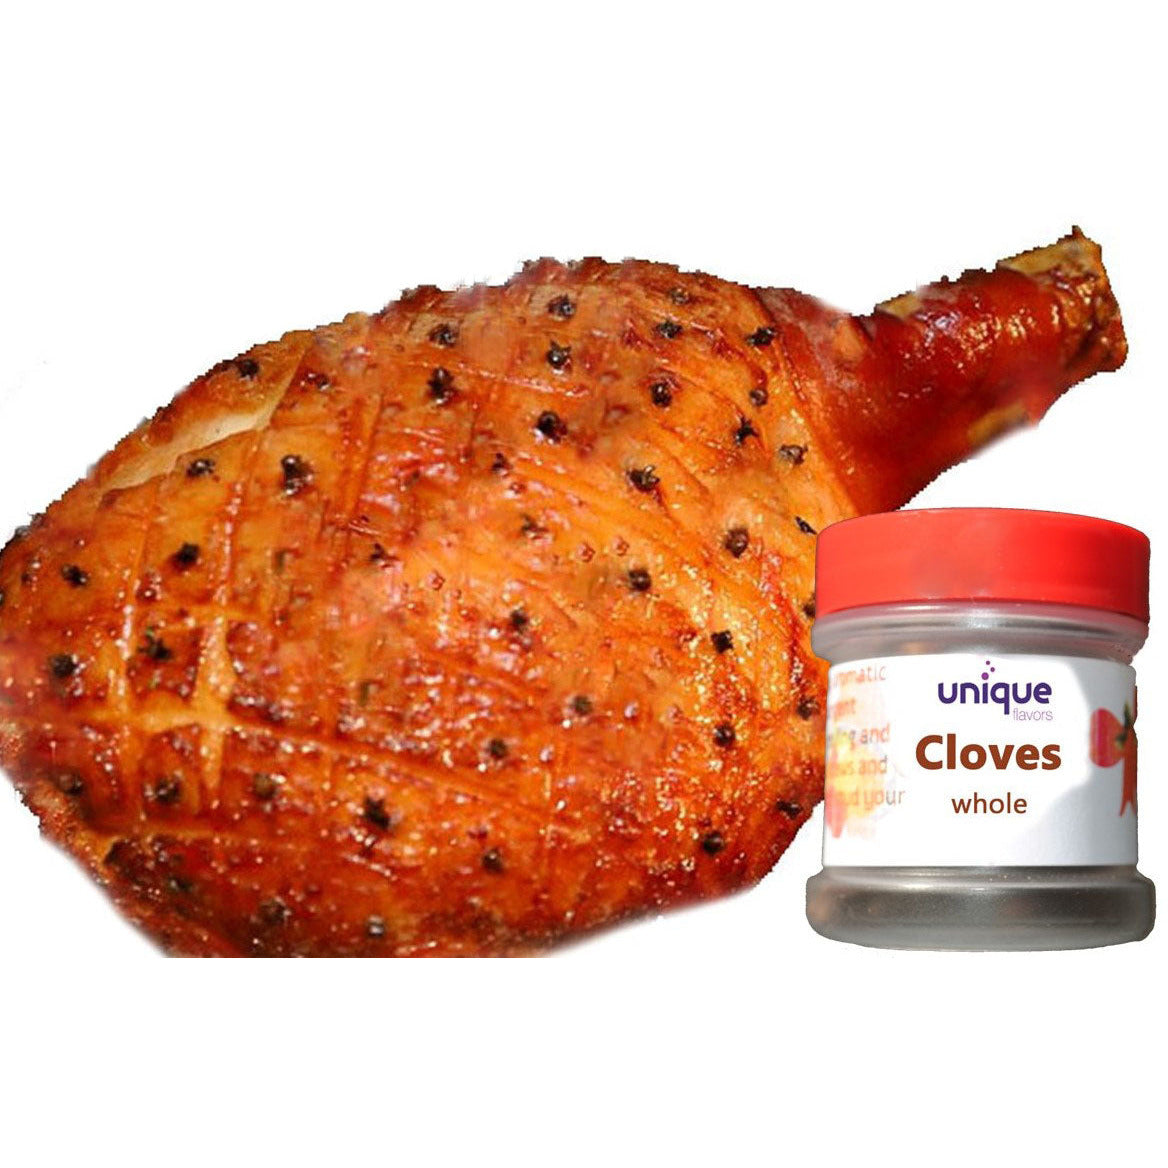 Whole Cloves 0.5oz - Unique Flavors Spices Unique Flavors LLC  spices cloves holiday spices cloves whole cloves benefits cloves in orange cloves health benefits spices for easter ham